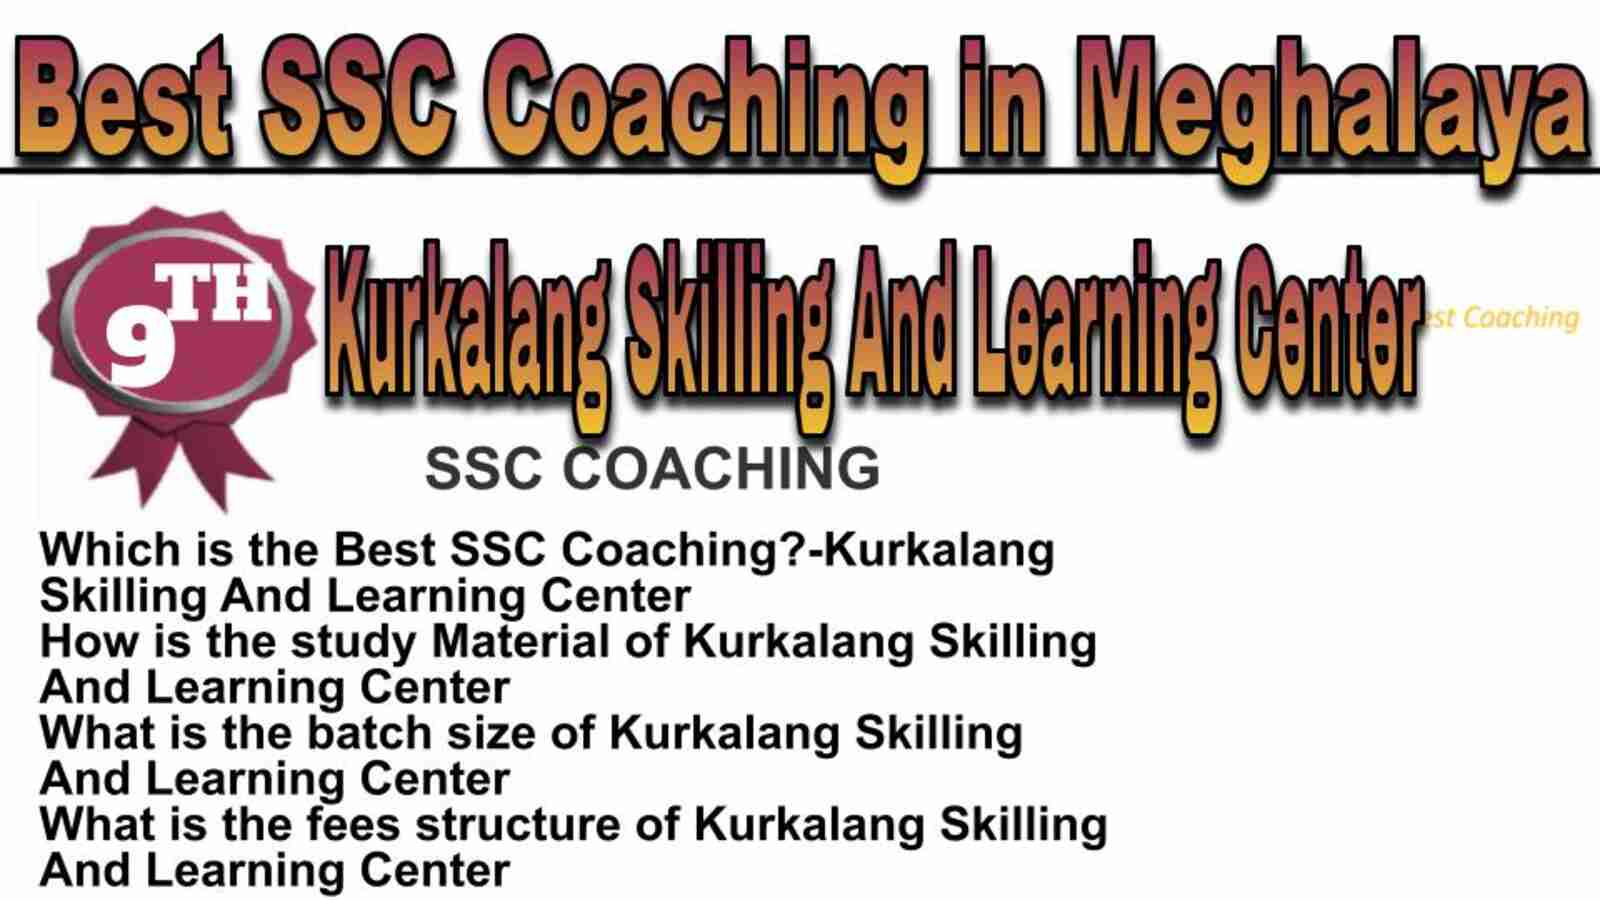 Rank 9 best SSC coaching in Meghalaya